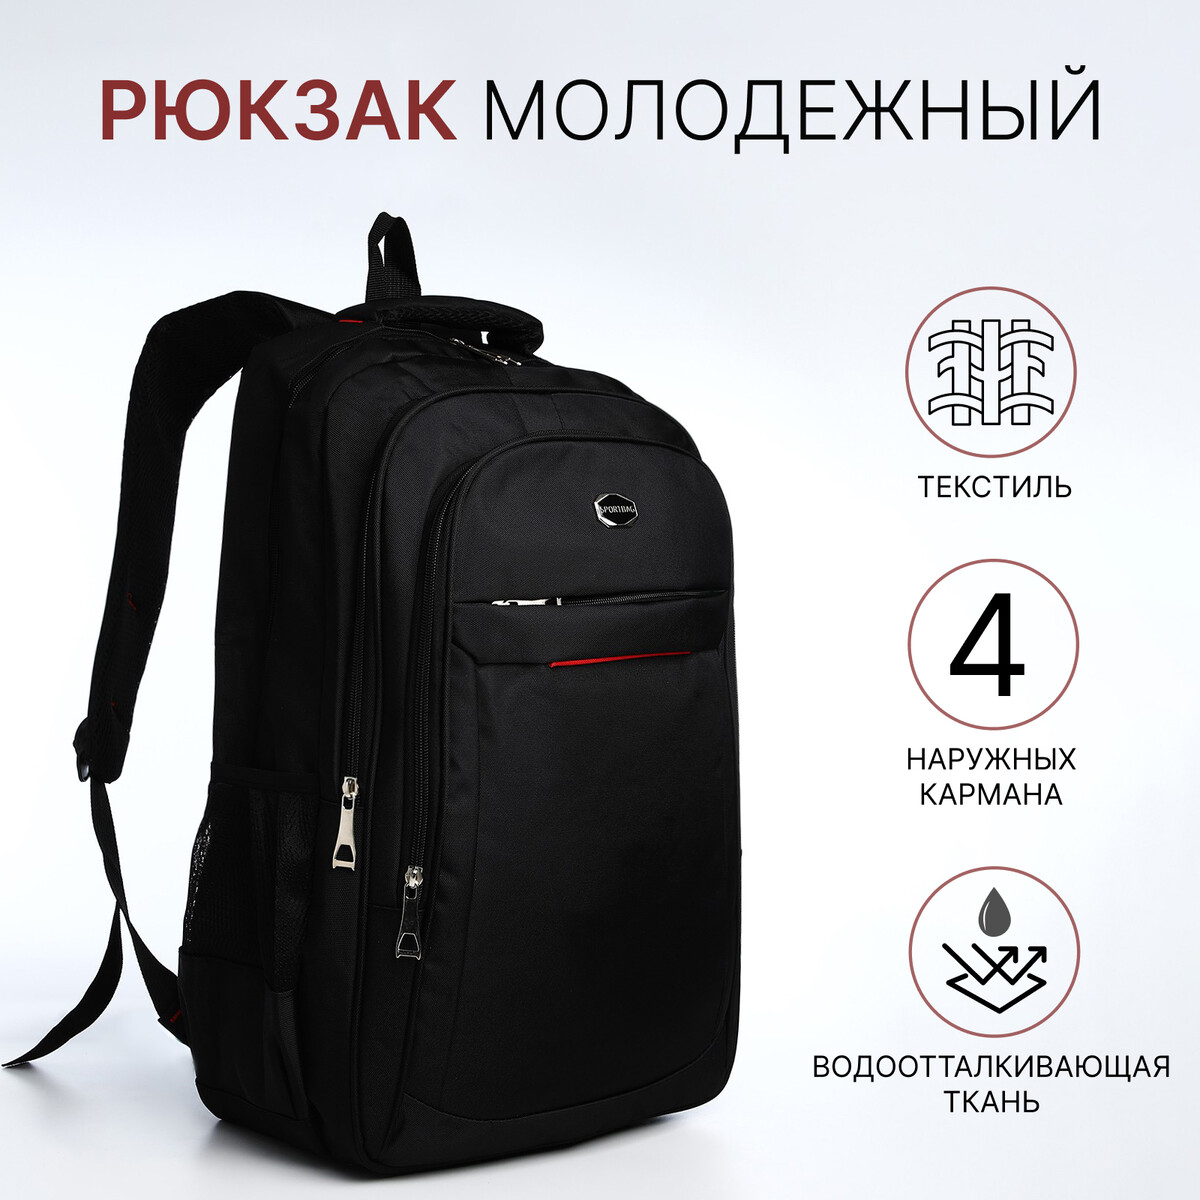 Рюкзак молодежный из текстиля, 2 отдела на молнии, 4 кармана, цвет черный/красный